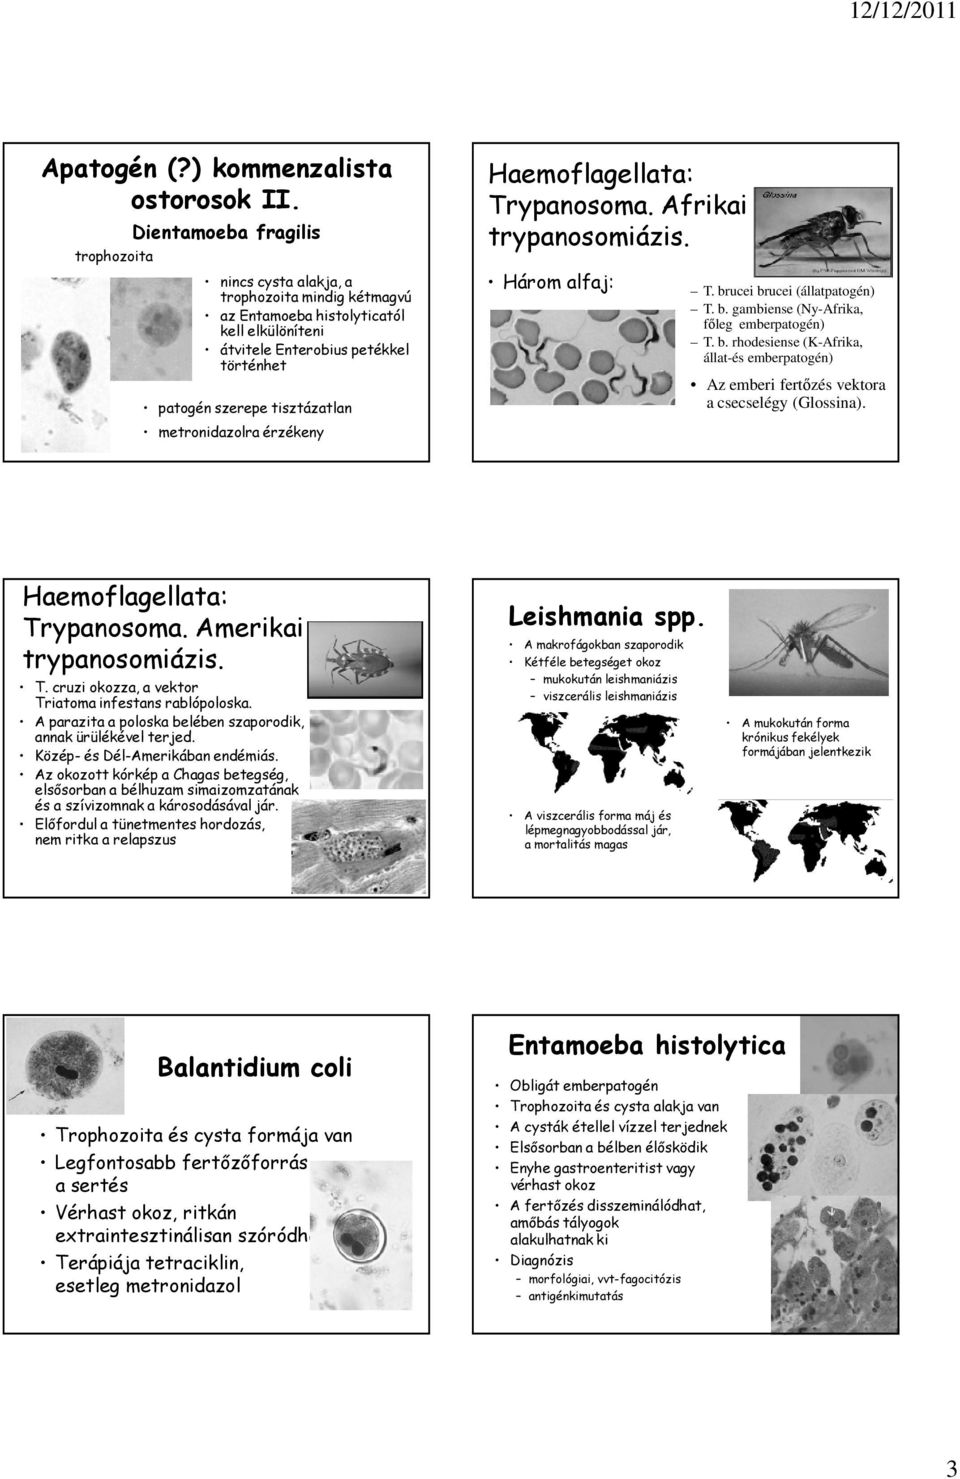 metronidazolra érzékeny Haemoflagellata: Trypanosoma. Afrikai trypanosomiázis. Három alfaj: T. brucei brucei (állatpatogén) T. b. gambiense (Ny-Afrika, főleg emberpatogén) T. b. rhodesiense (K-Afrika, állat-és emberpatogén) Az emberi fertőzés vektora a csecselégy (Glossina).